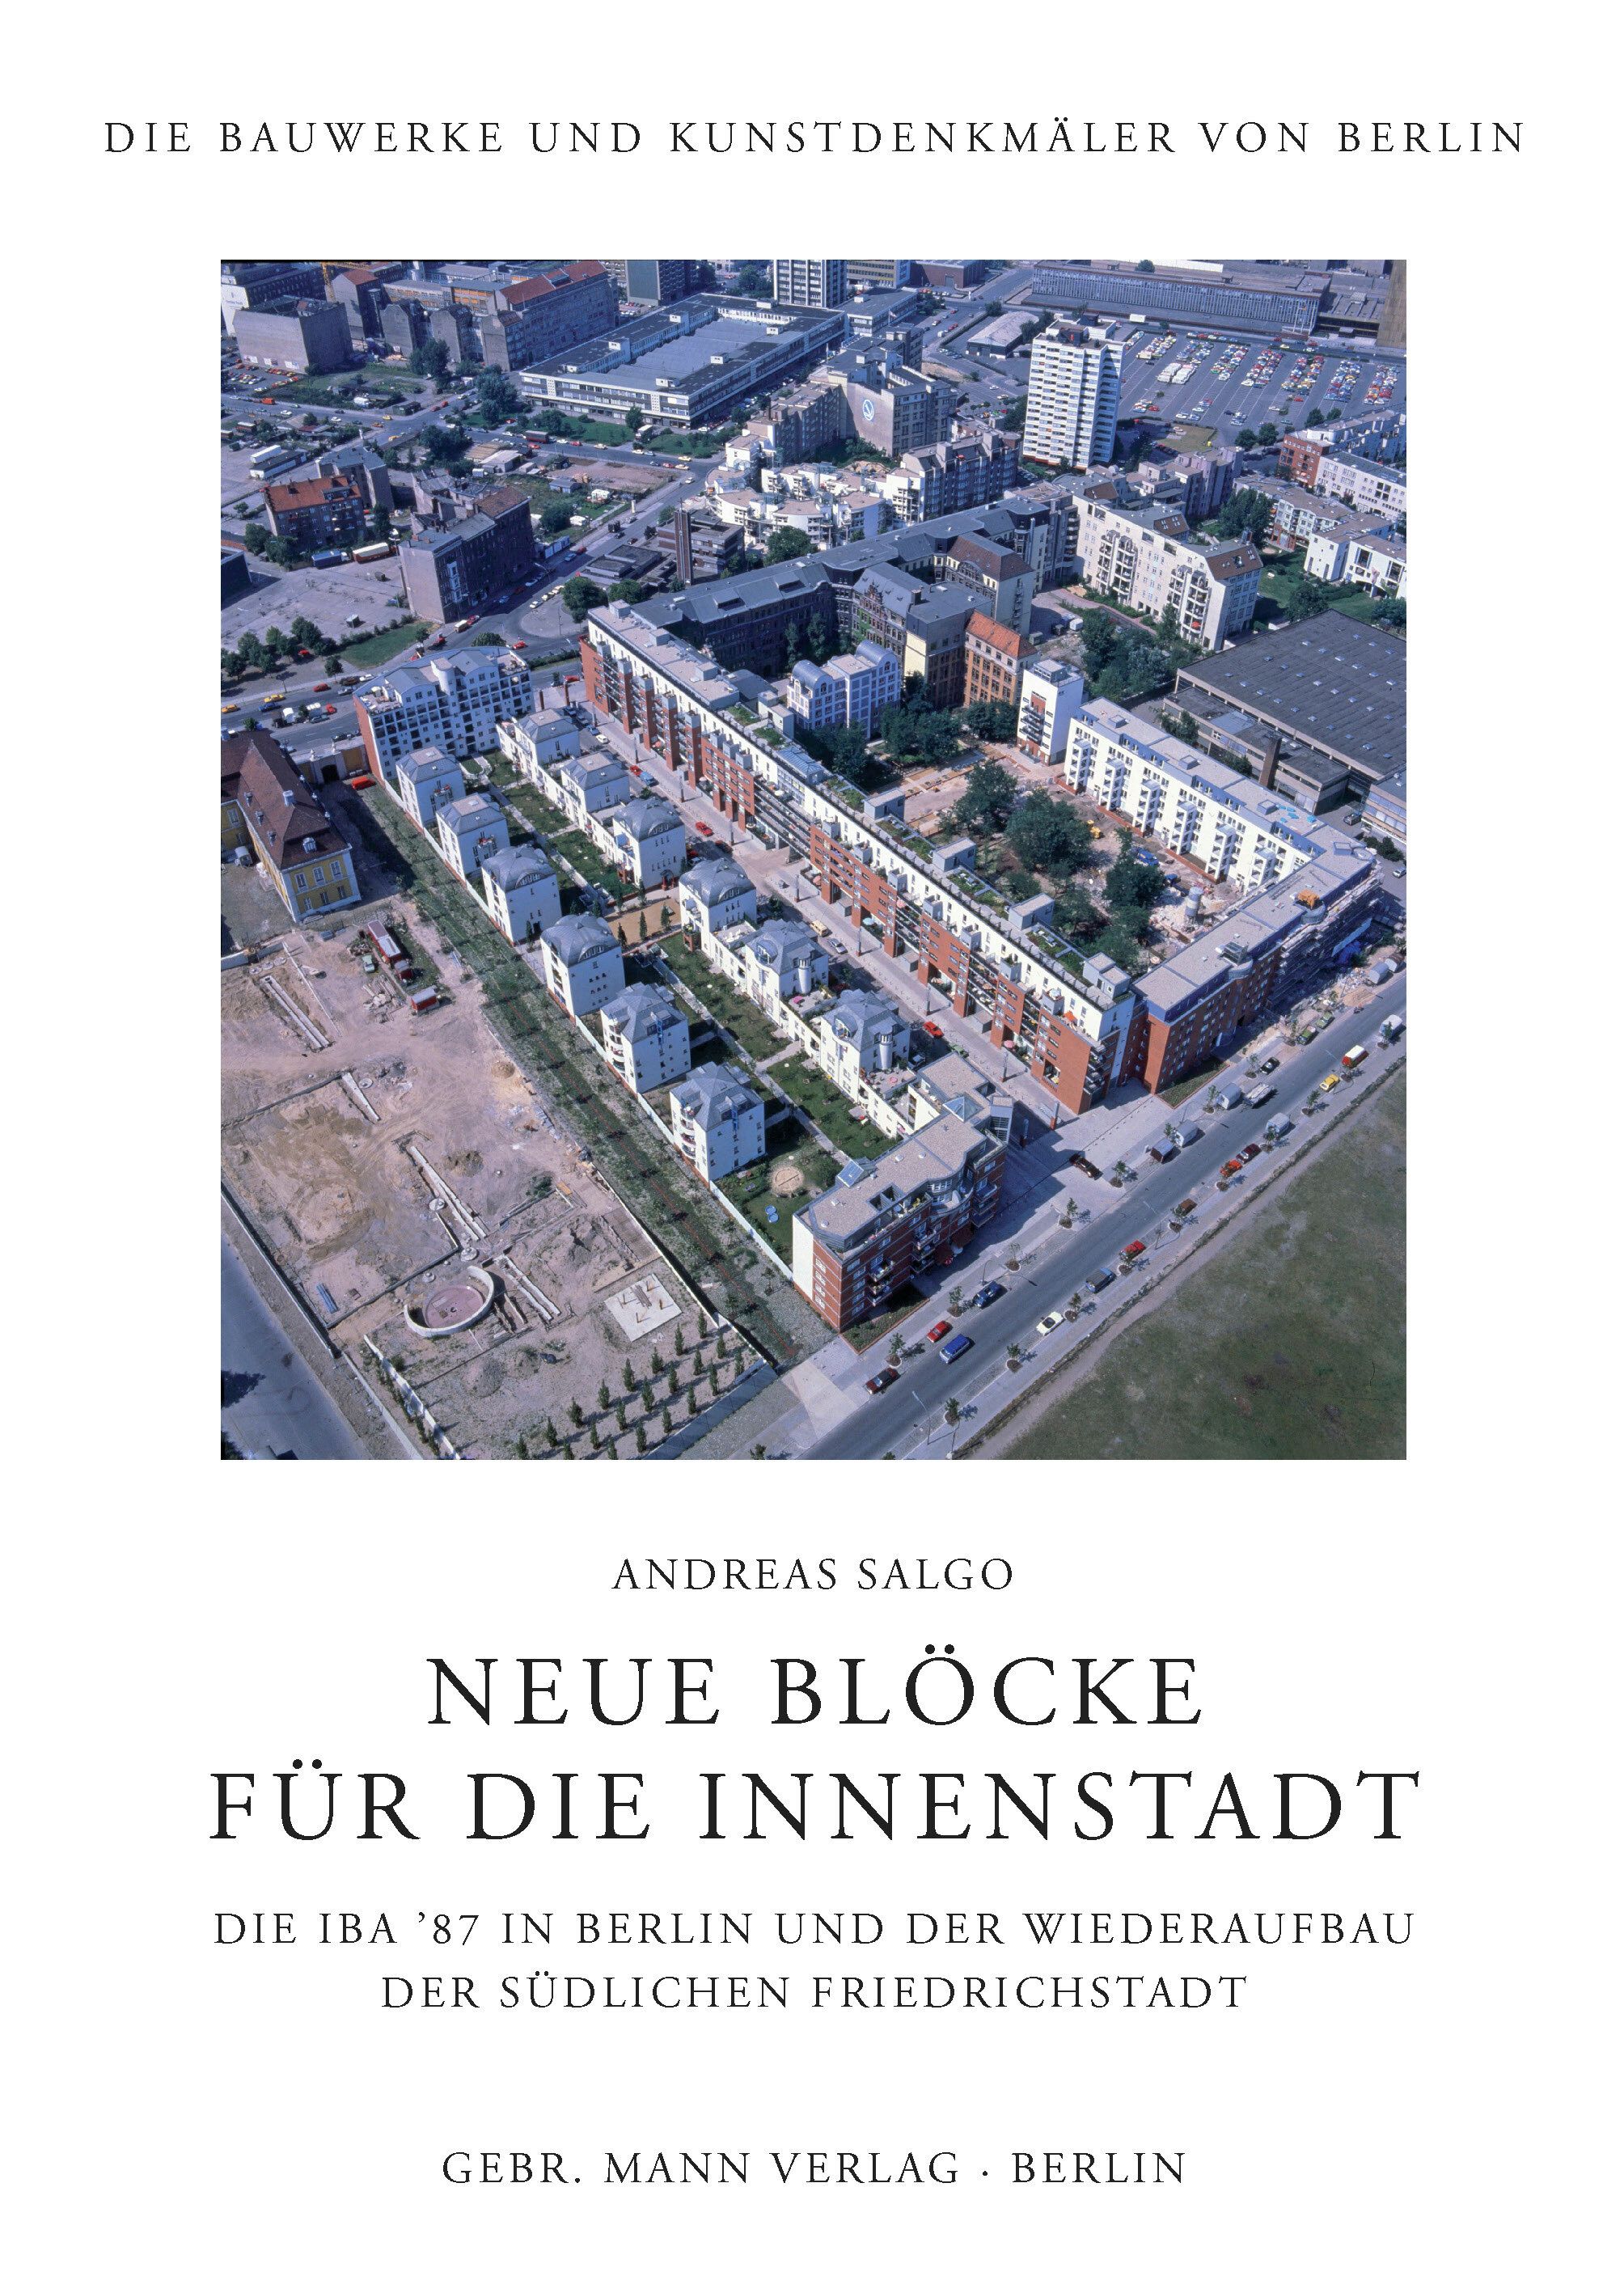 Cover "Neue Blöcke für die Innenstadt", Andreas Salgo, 2021